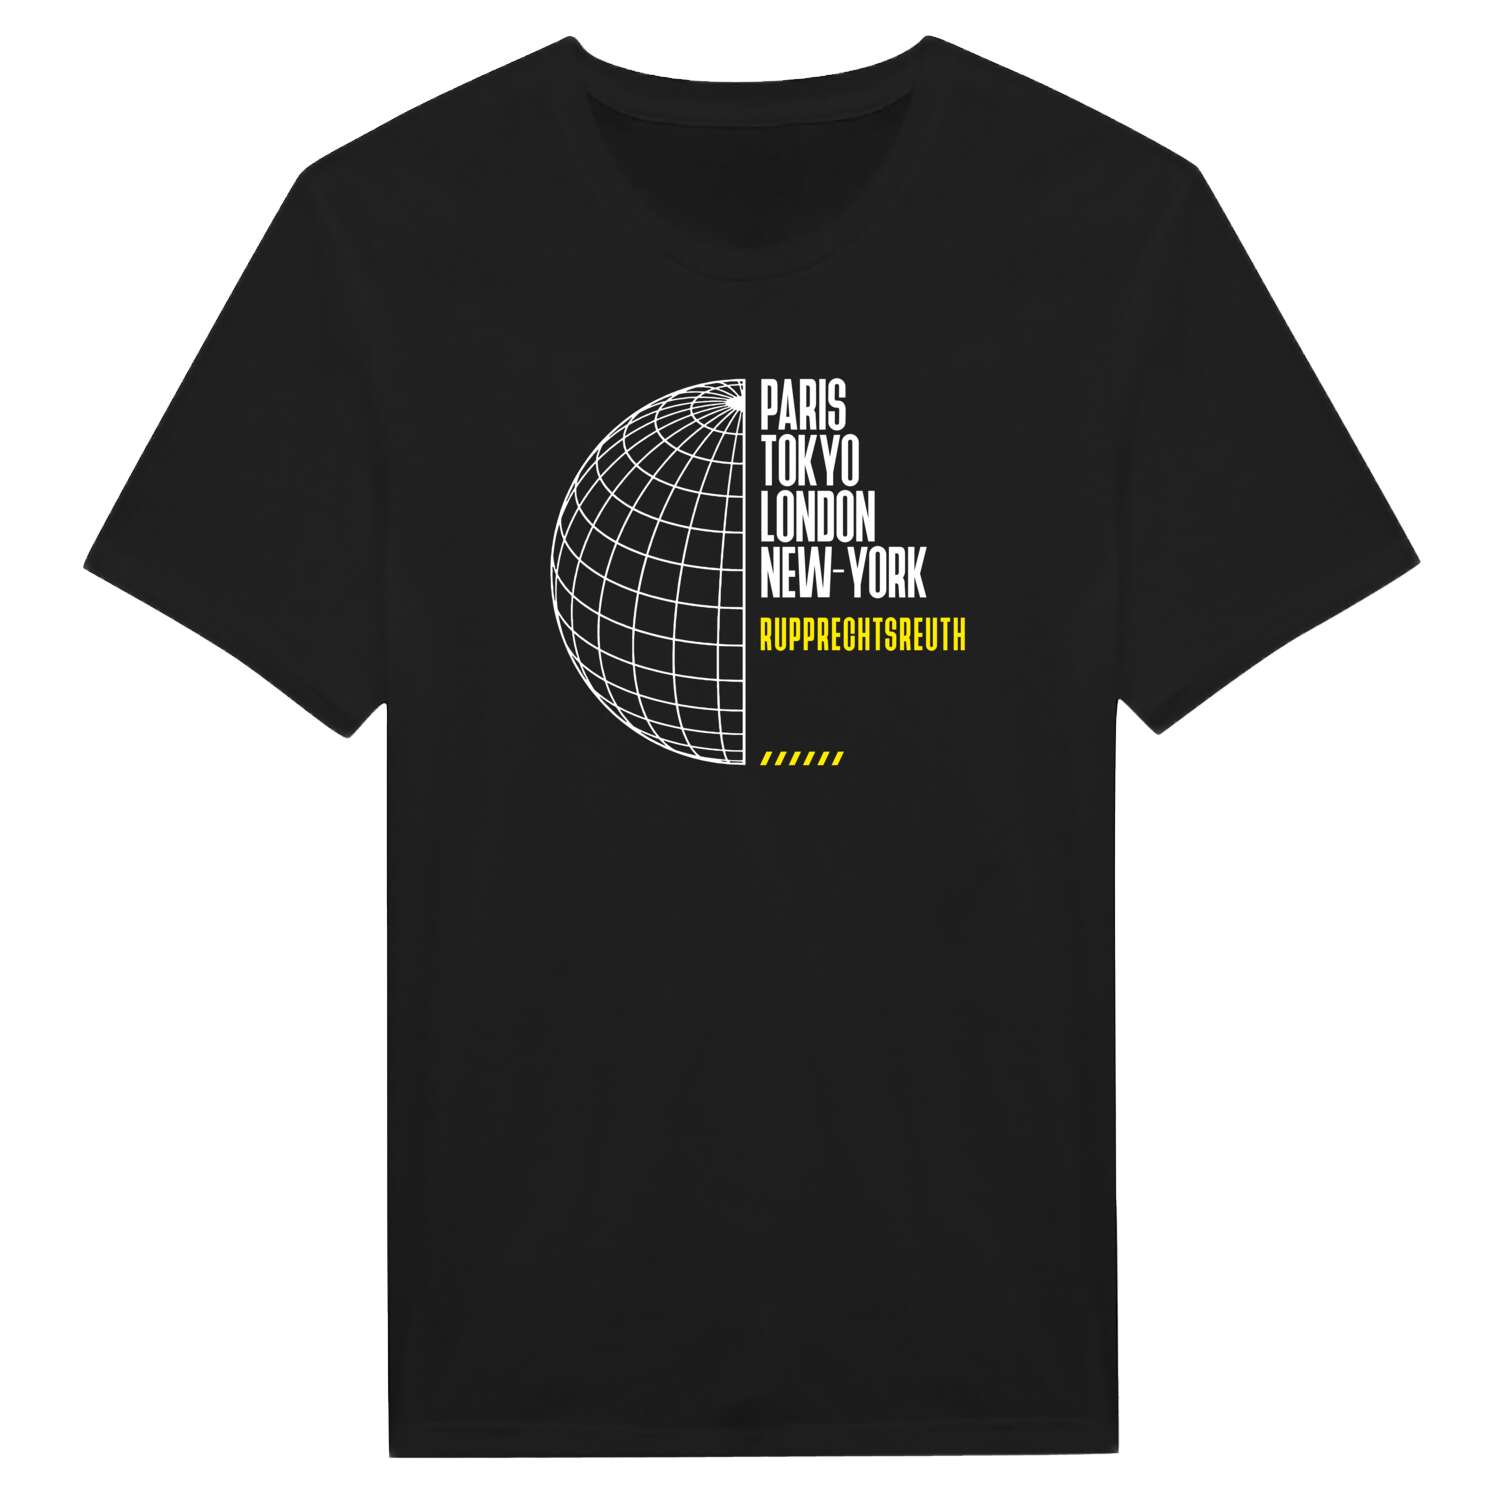 Rupprechtsreuth T-Shirt »Paris Tokyo London«